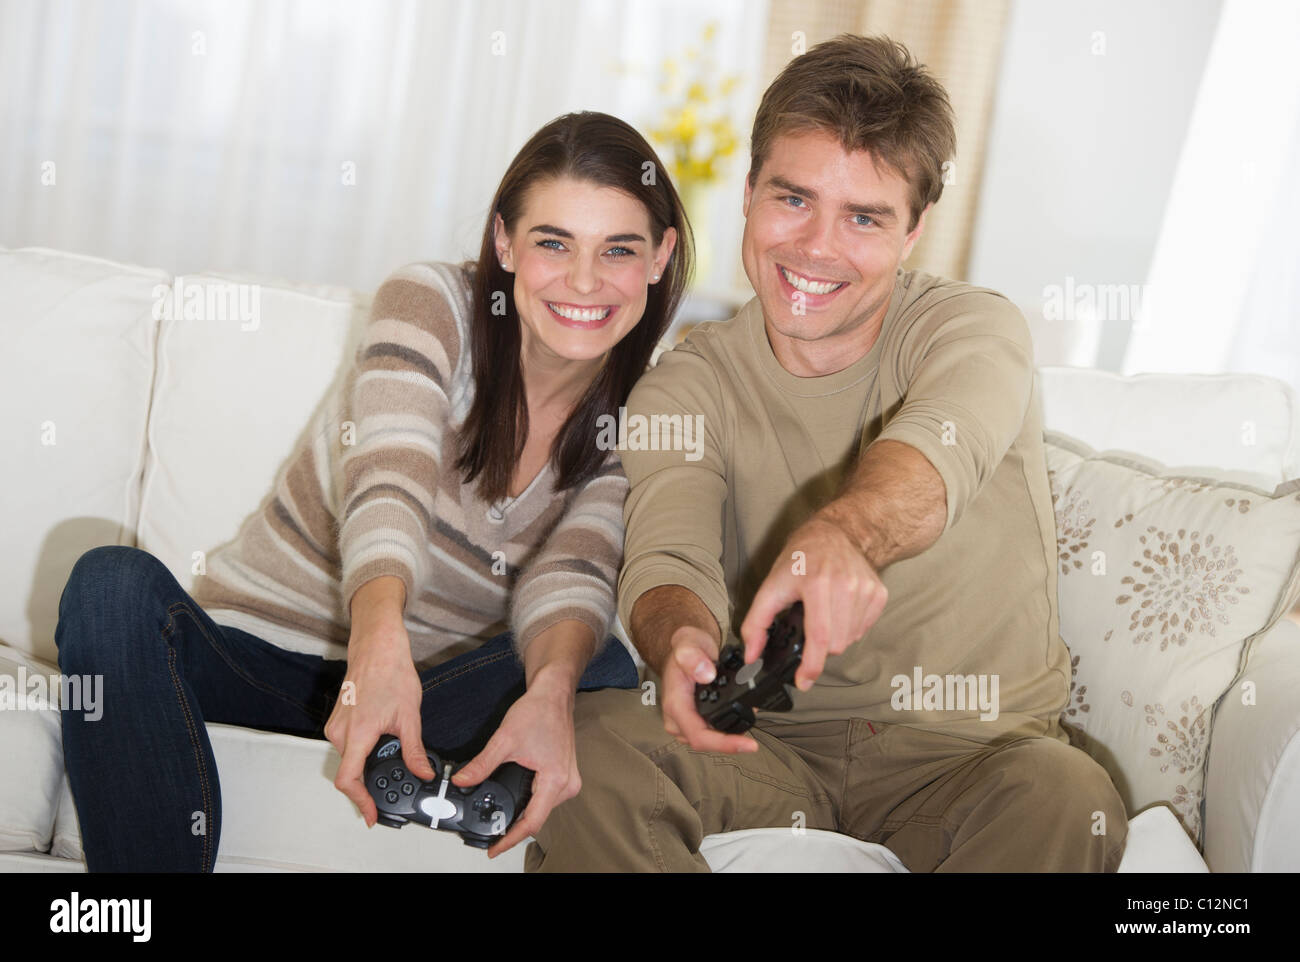 USA, New Jersey, Jersey City, Couple sitting on sofa, jouer à des jeux vidéo Banque D'Images